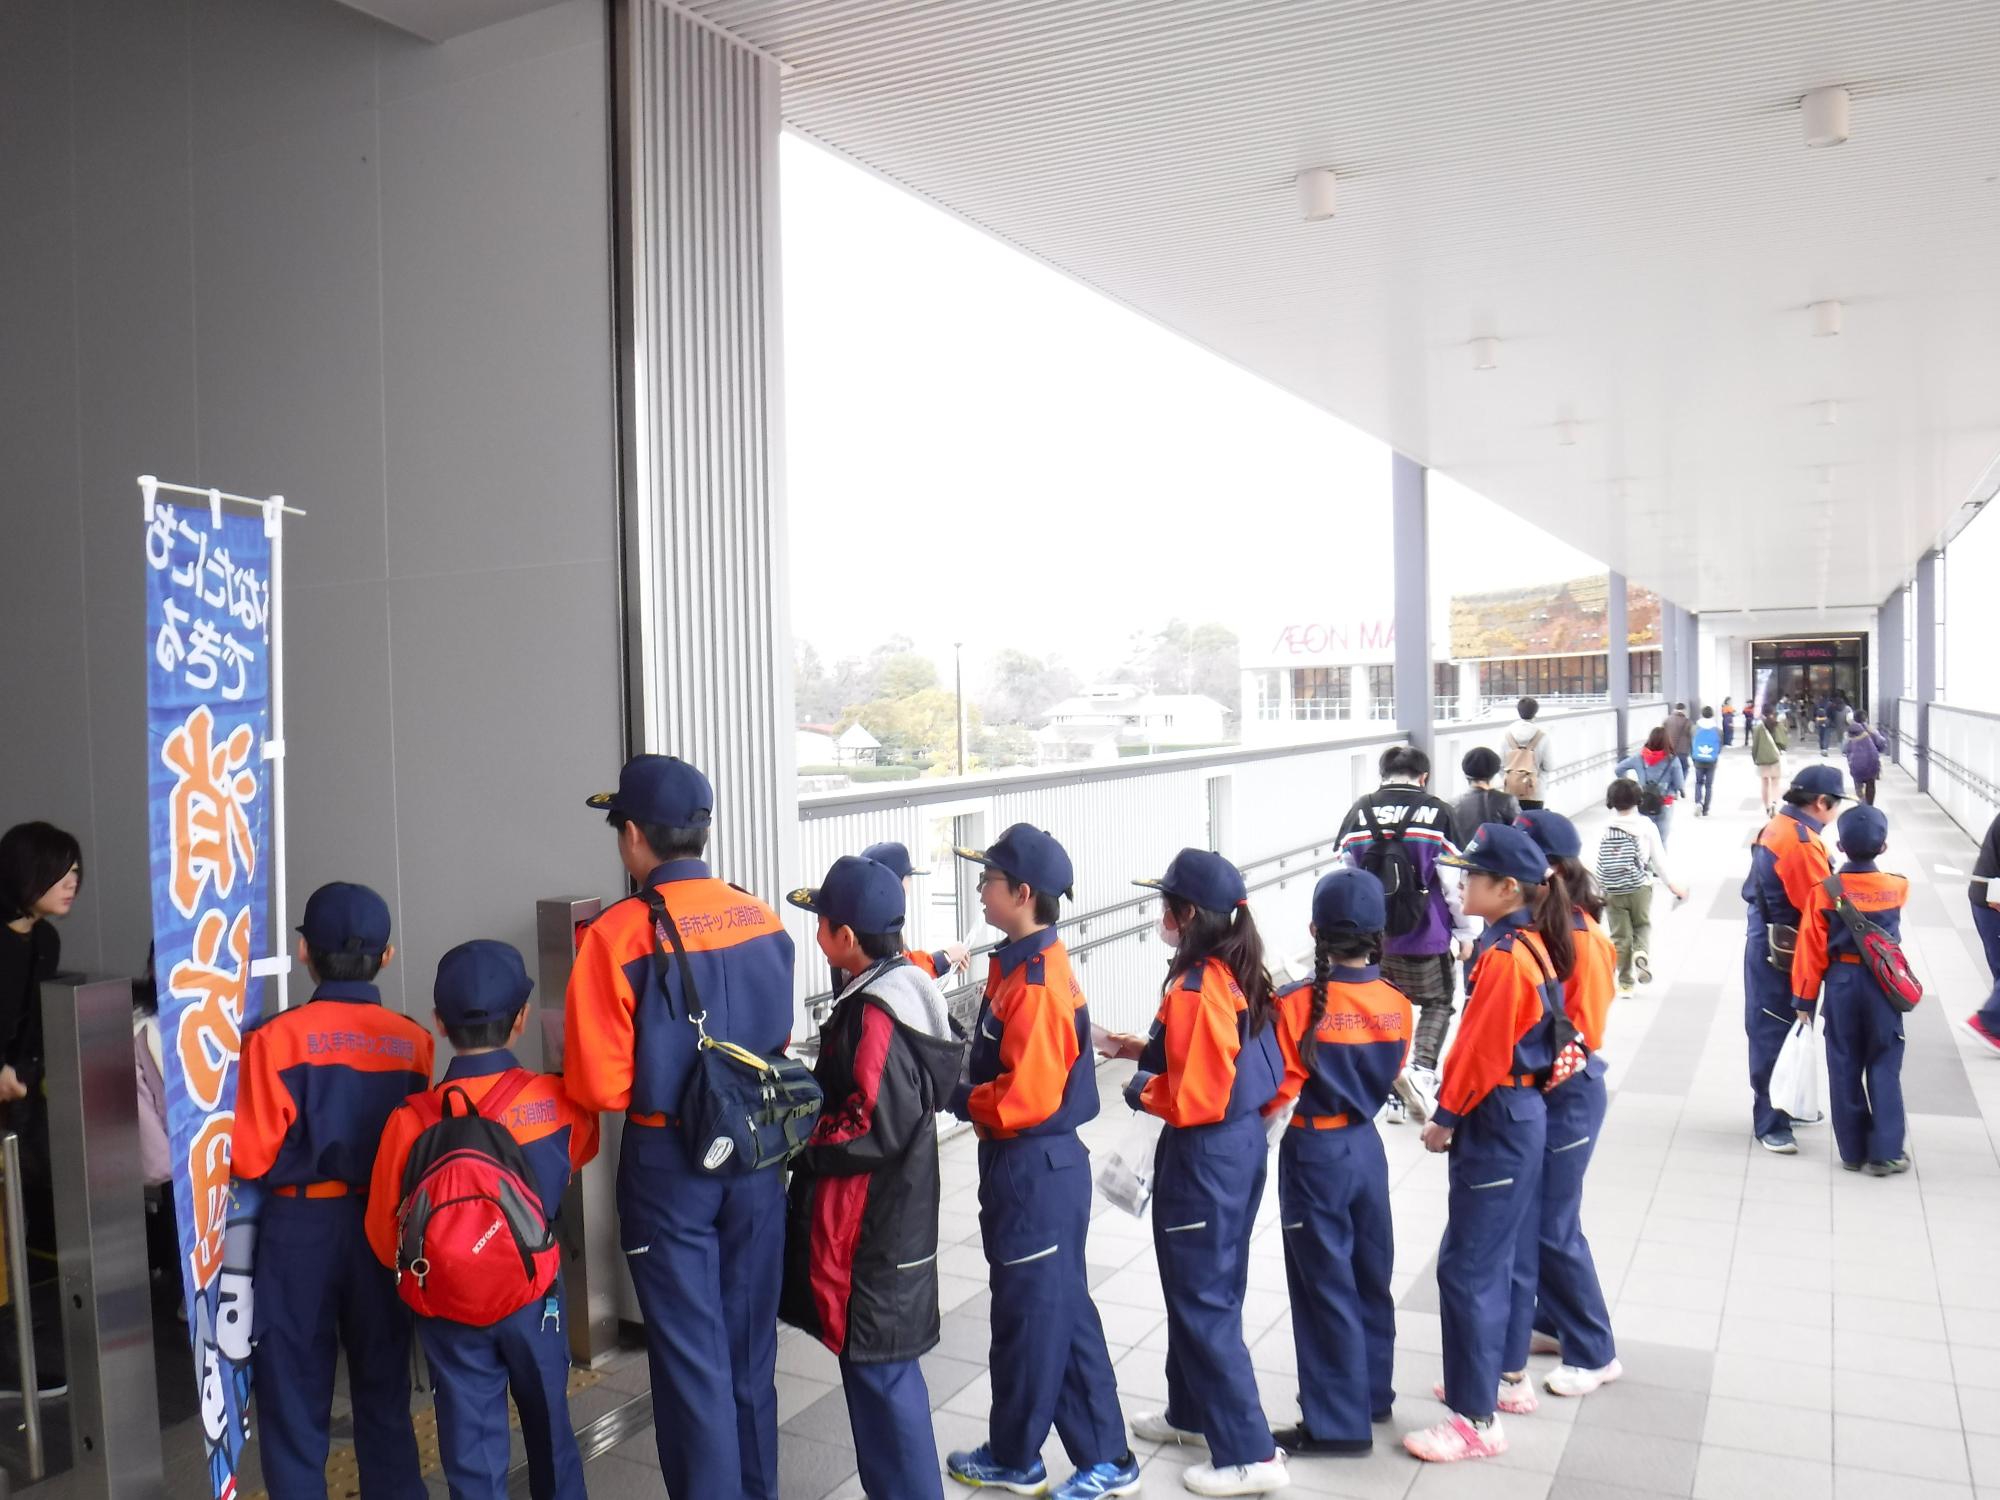 紺色とオレンジ色の消防隊員の服装をした子供たちが1列に並んでいる写真